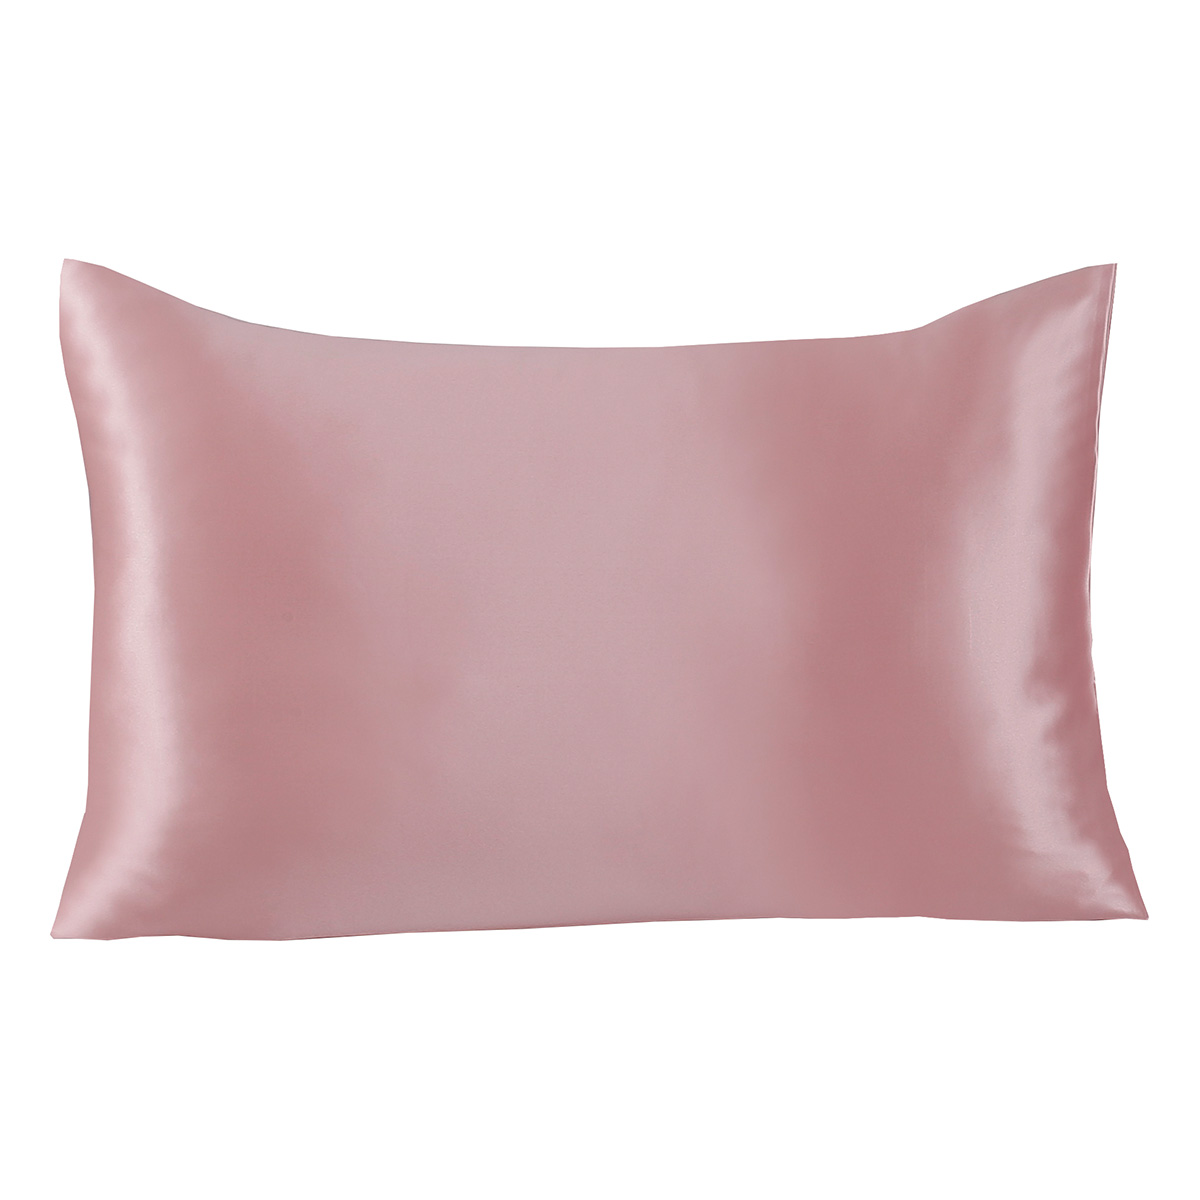 Μεταξωτή μαξιλαροθήκη σε κουτί δώρου 50×70 Ροζ Beauty Home